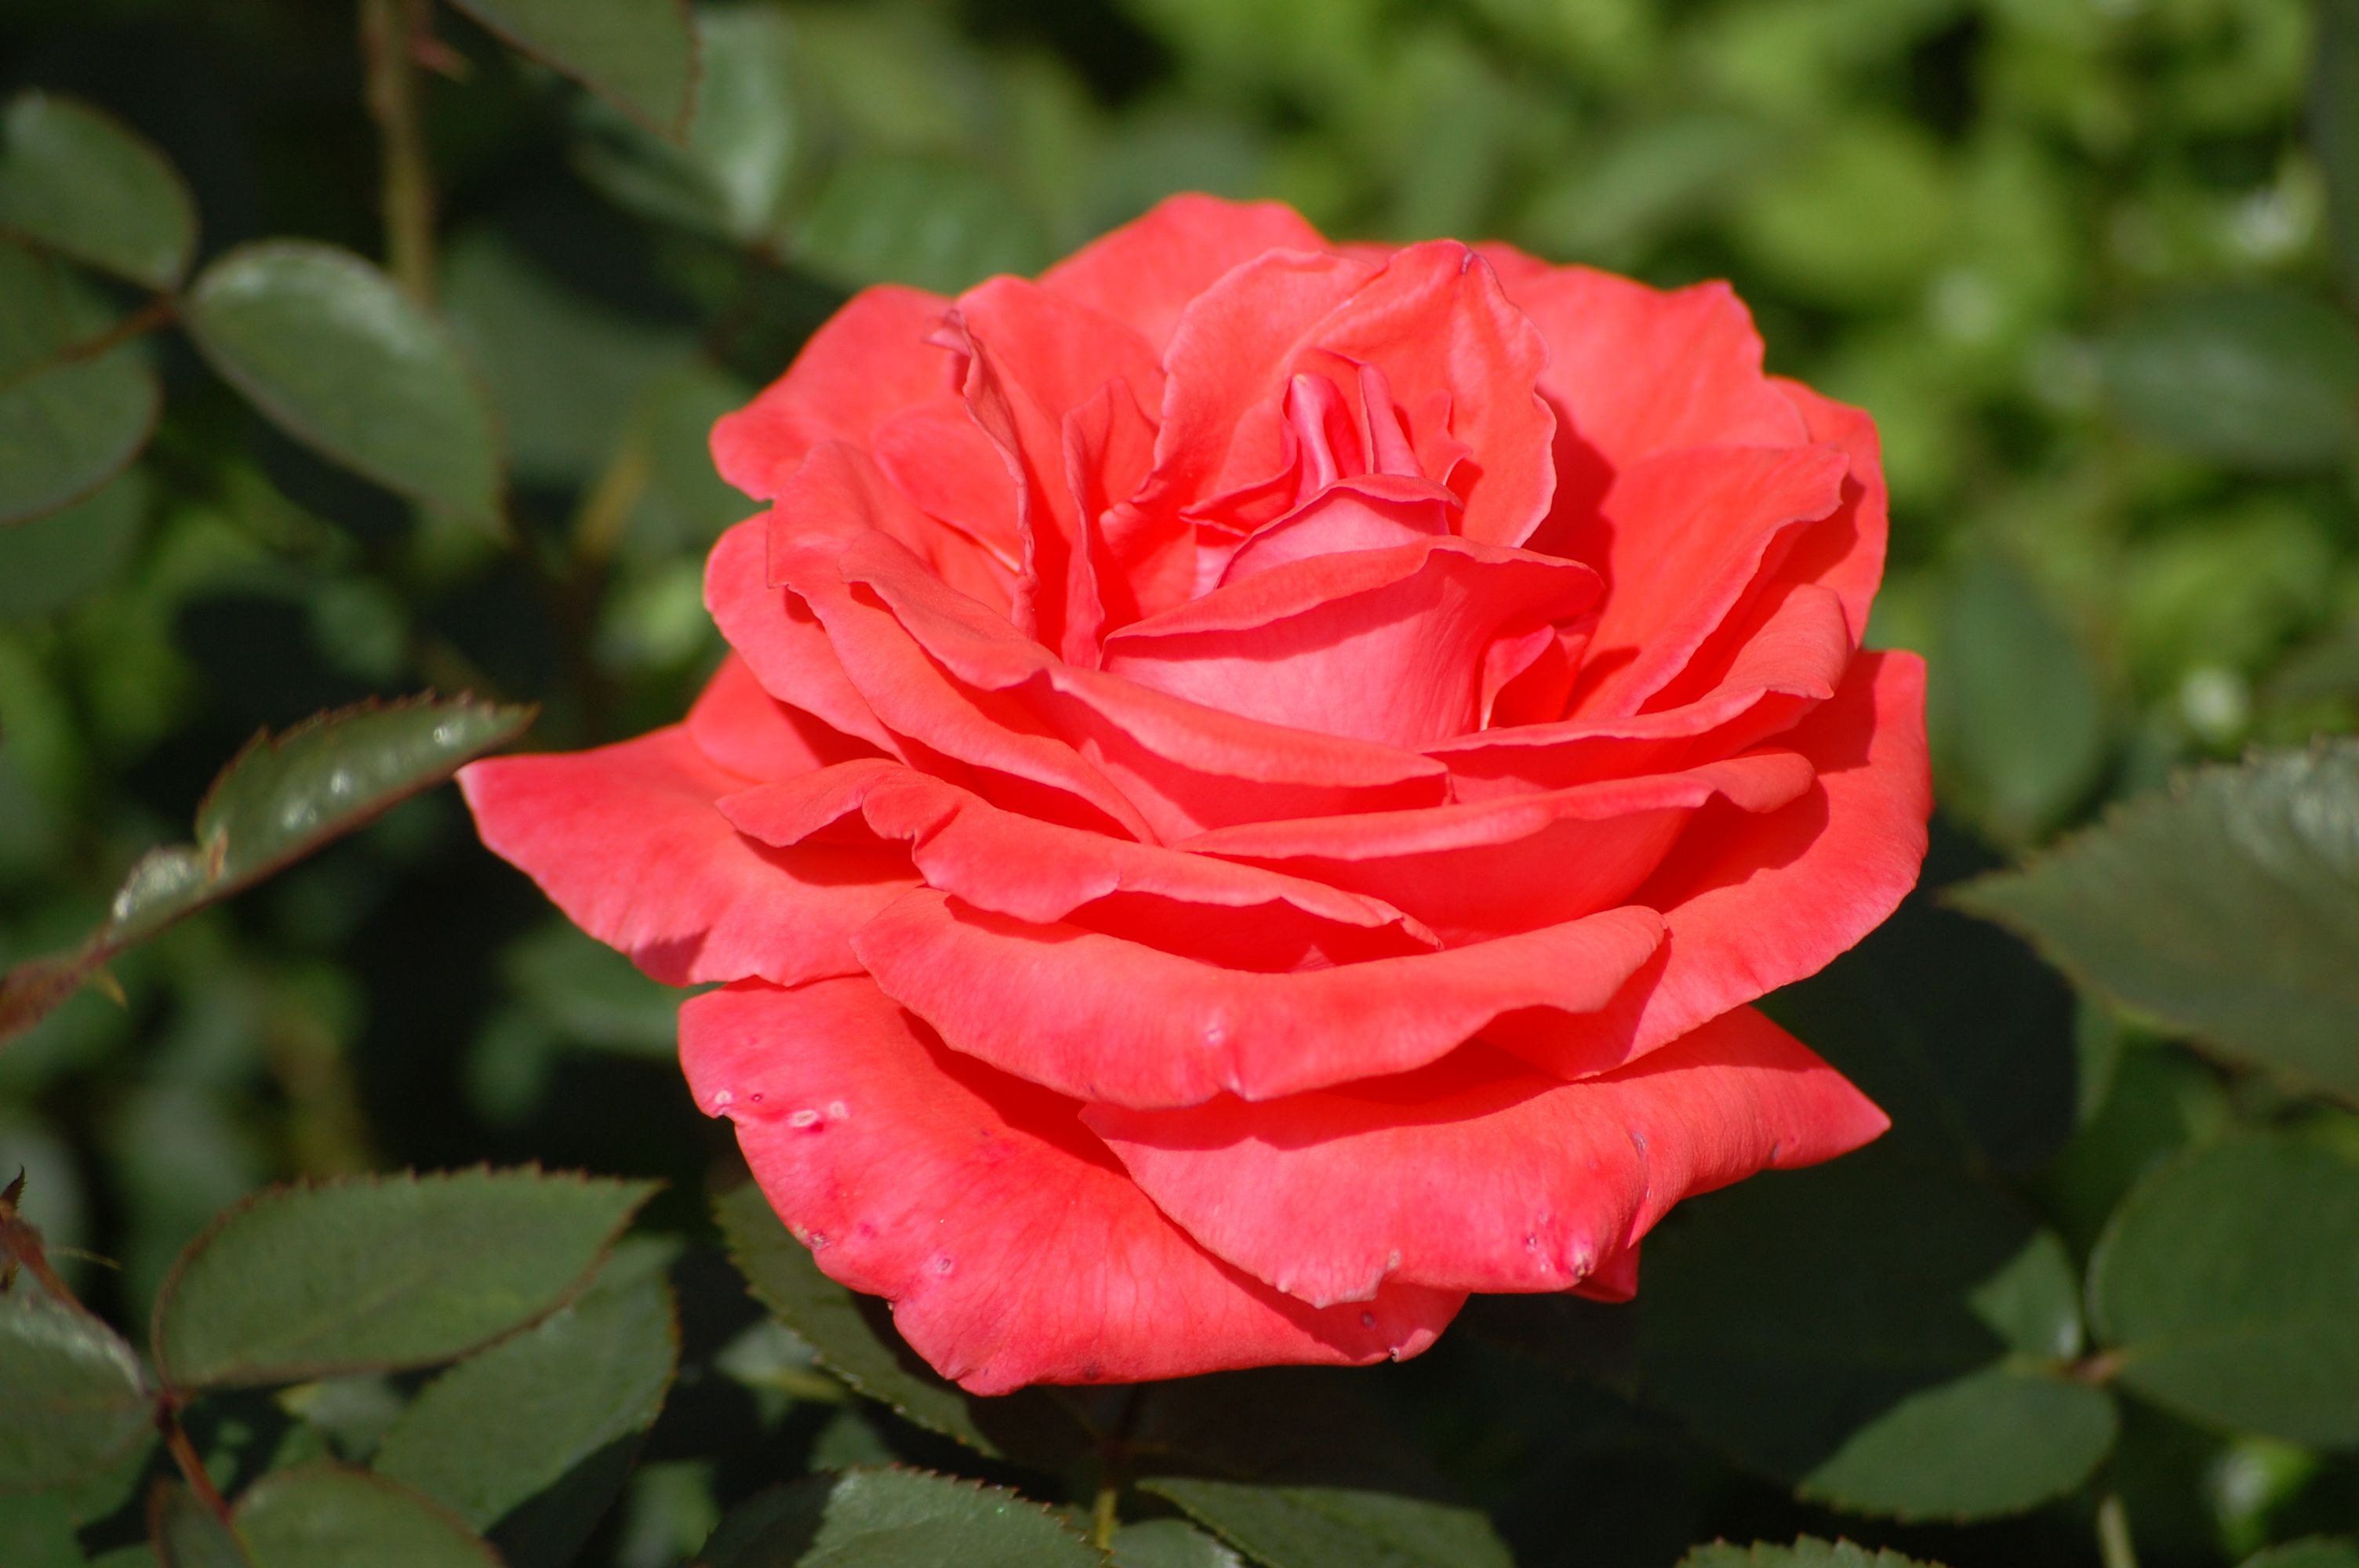 Роза чайно-гибридная Лидка